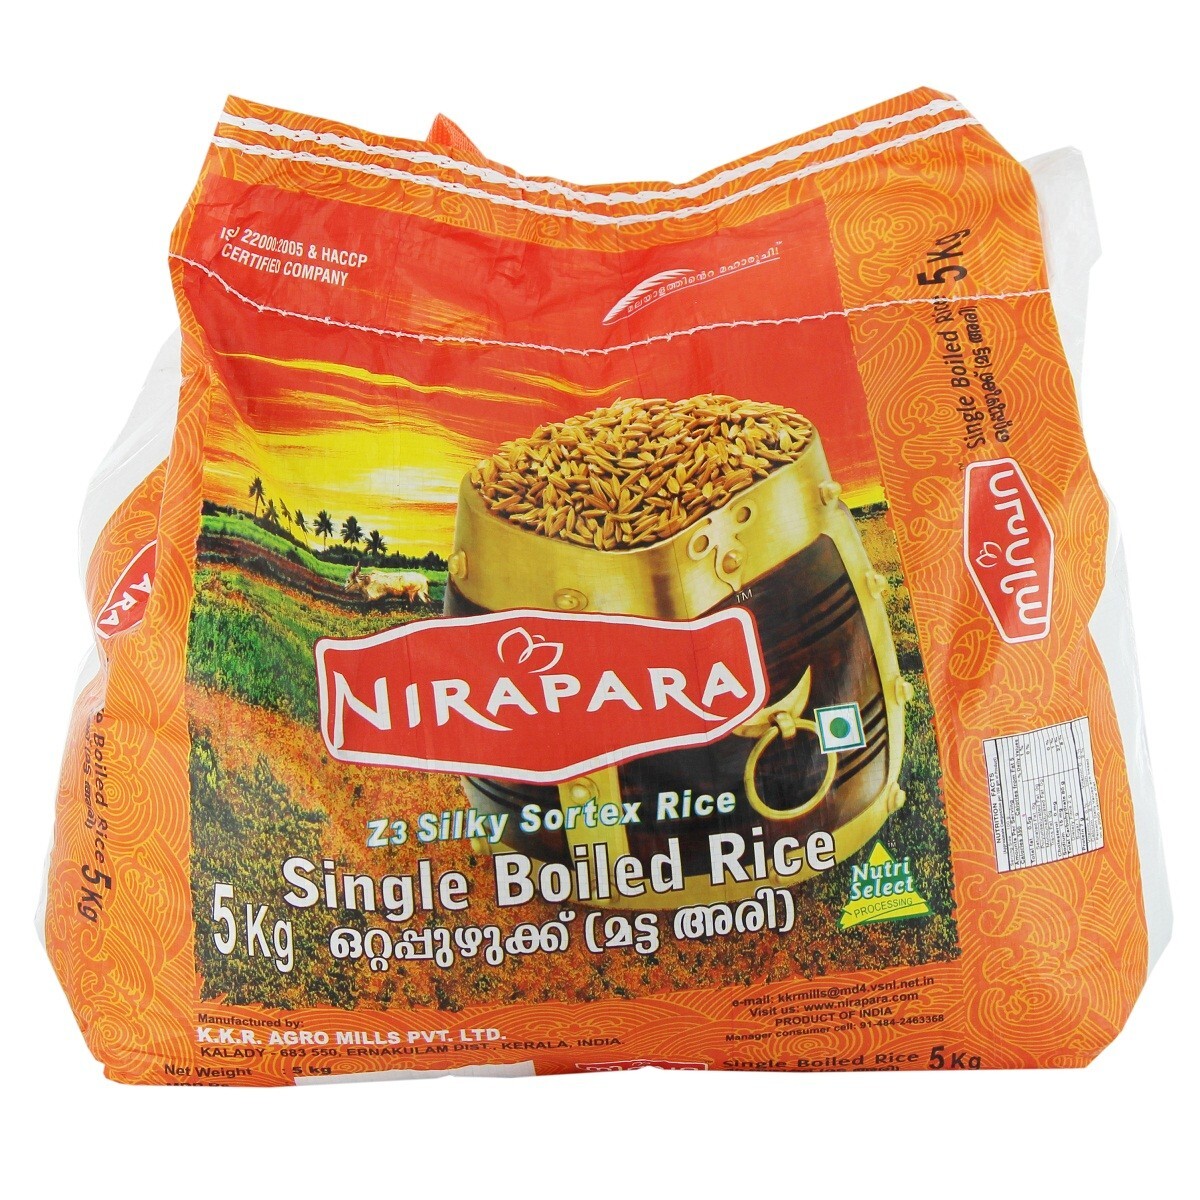 Nirapara Single Boiled Rice 5kg